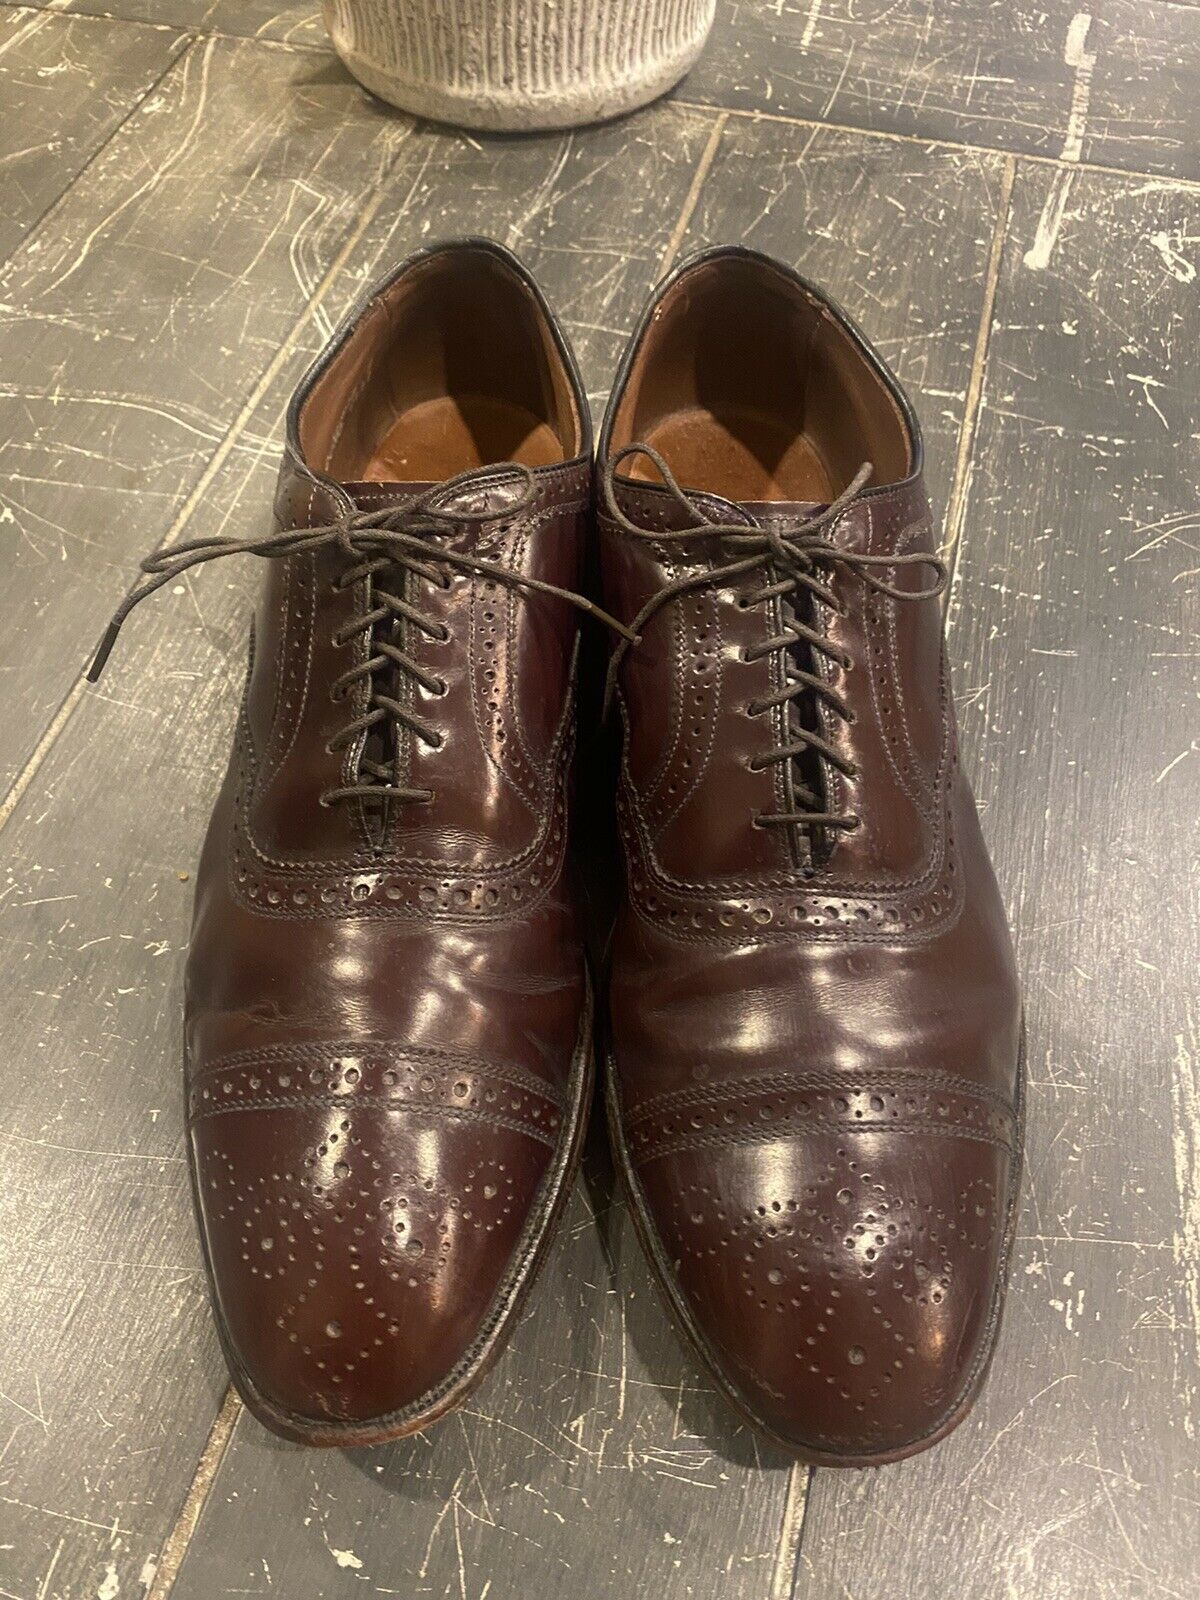 Allen Edmonds Strand Cap-Toe Oxfords Burgundy Dress Shoes Size 11 D